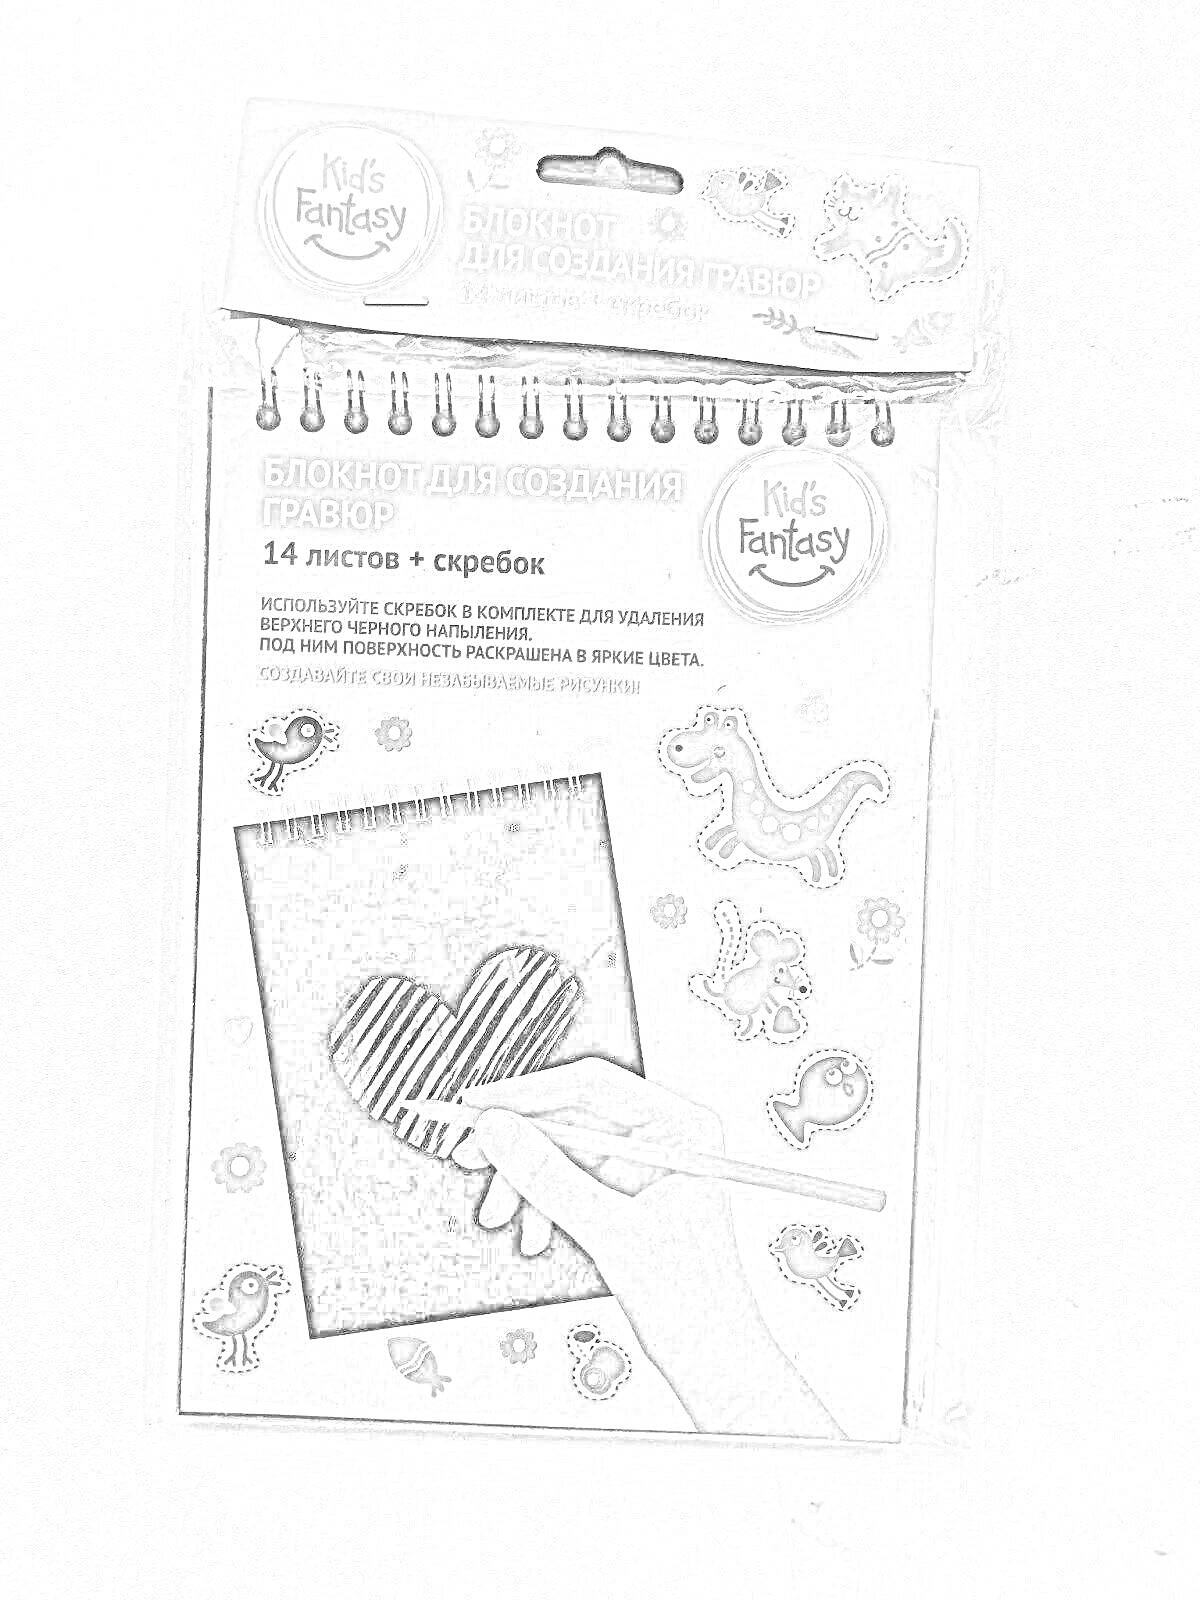 Раскраска Блокнот для создания гравюр Kids Fantasy, 14 листов, с изображением руки, держащей скребок и стирающей линиями сердечко, украшен наклейками с изображениями животных и растений